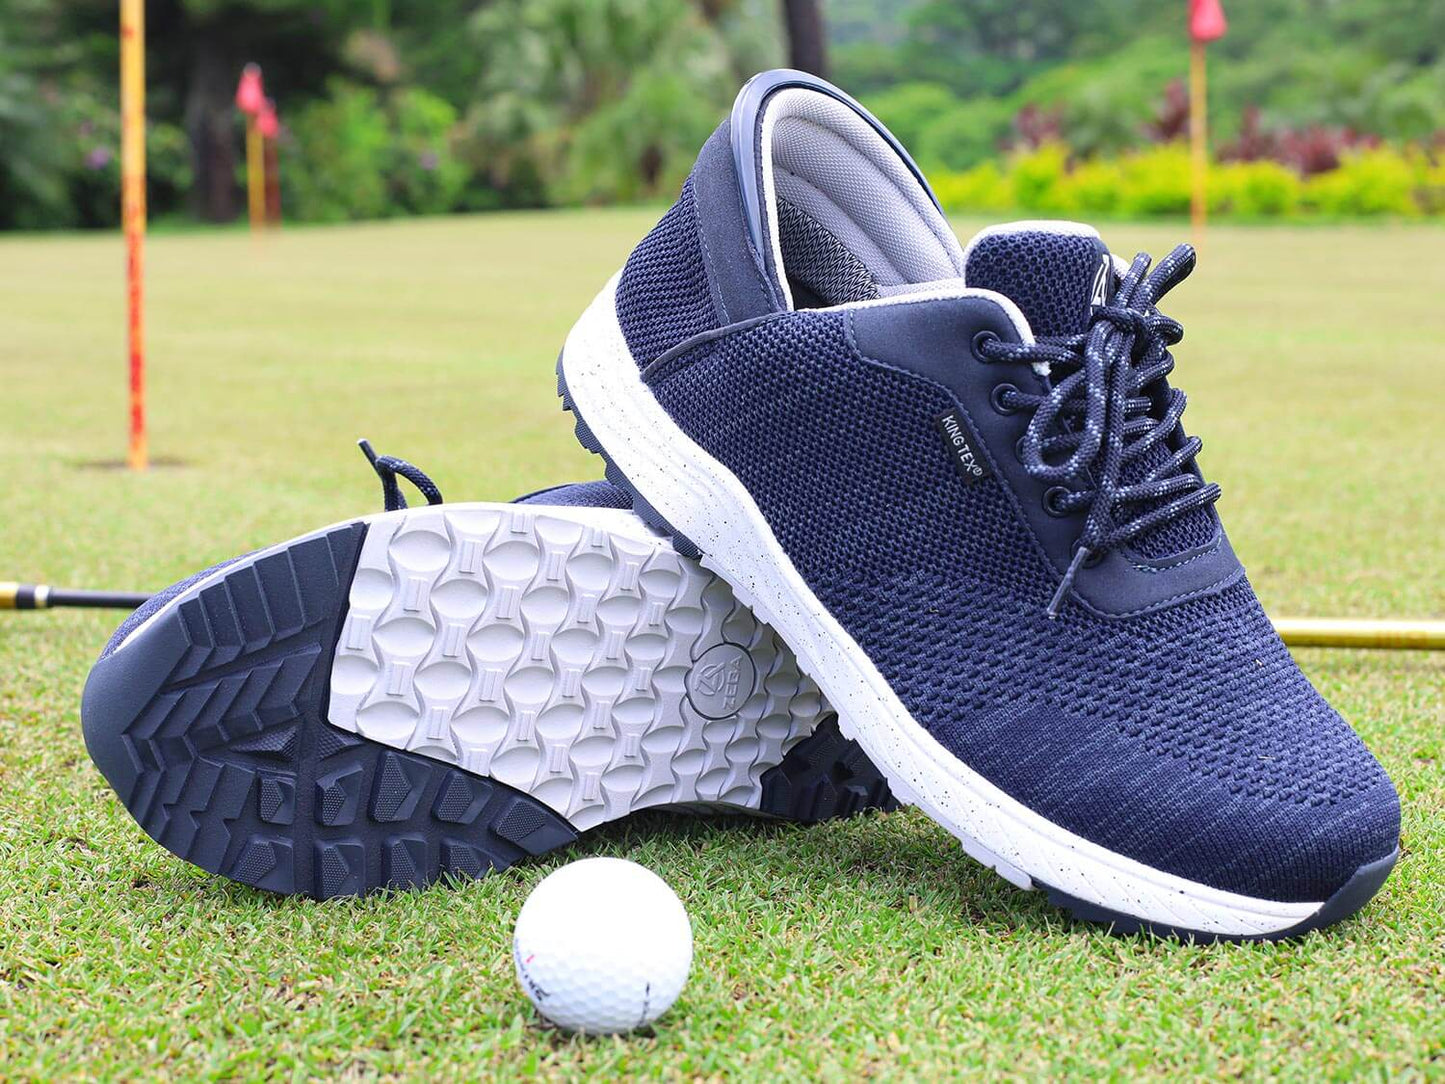 Men's Zeba Golf Shoes (Medium & Extra Wide, Sizes 7-16, Spikeless)